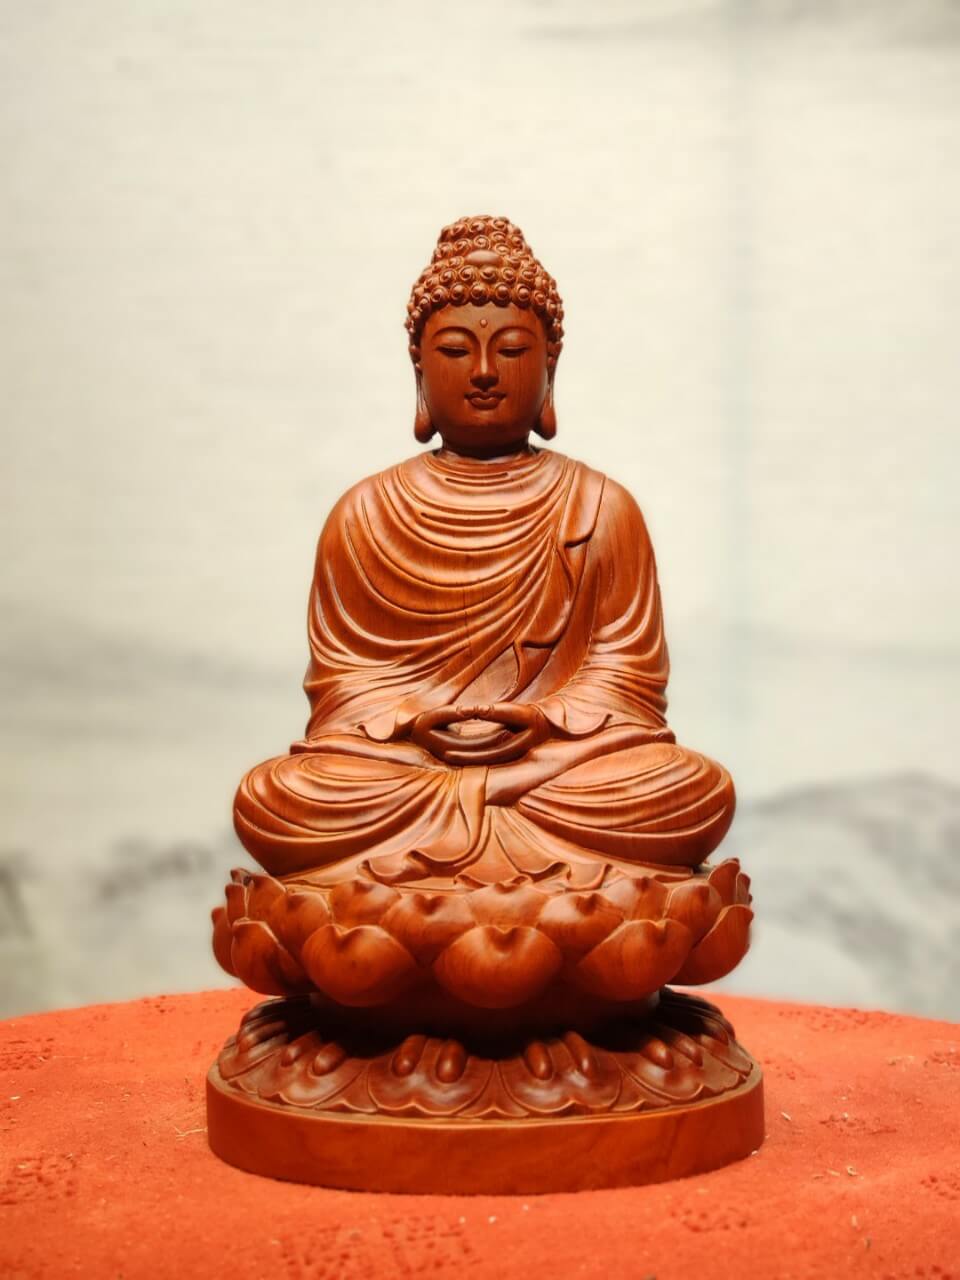 Fragen Sie nach einer wunderschönen Statue von Shakyamuni Buddha, wo das angesehenste Vermögen ist